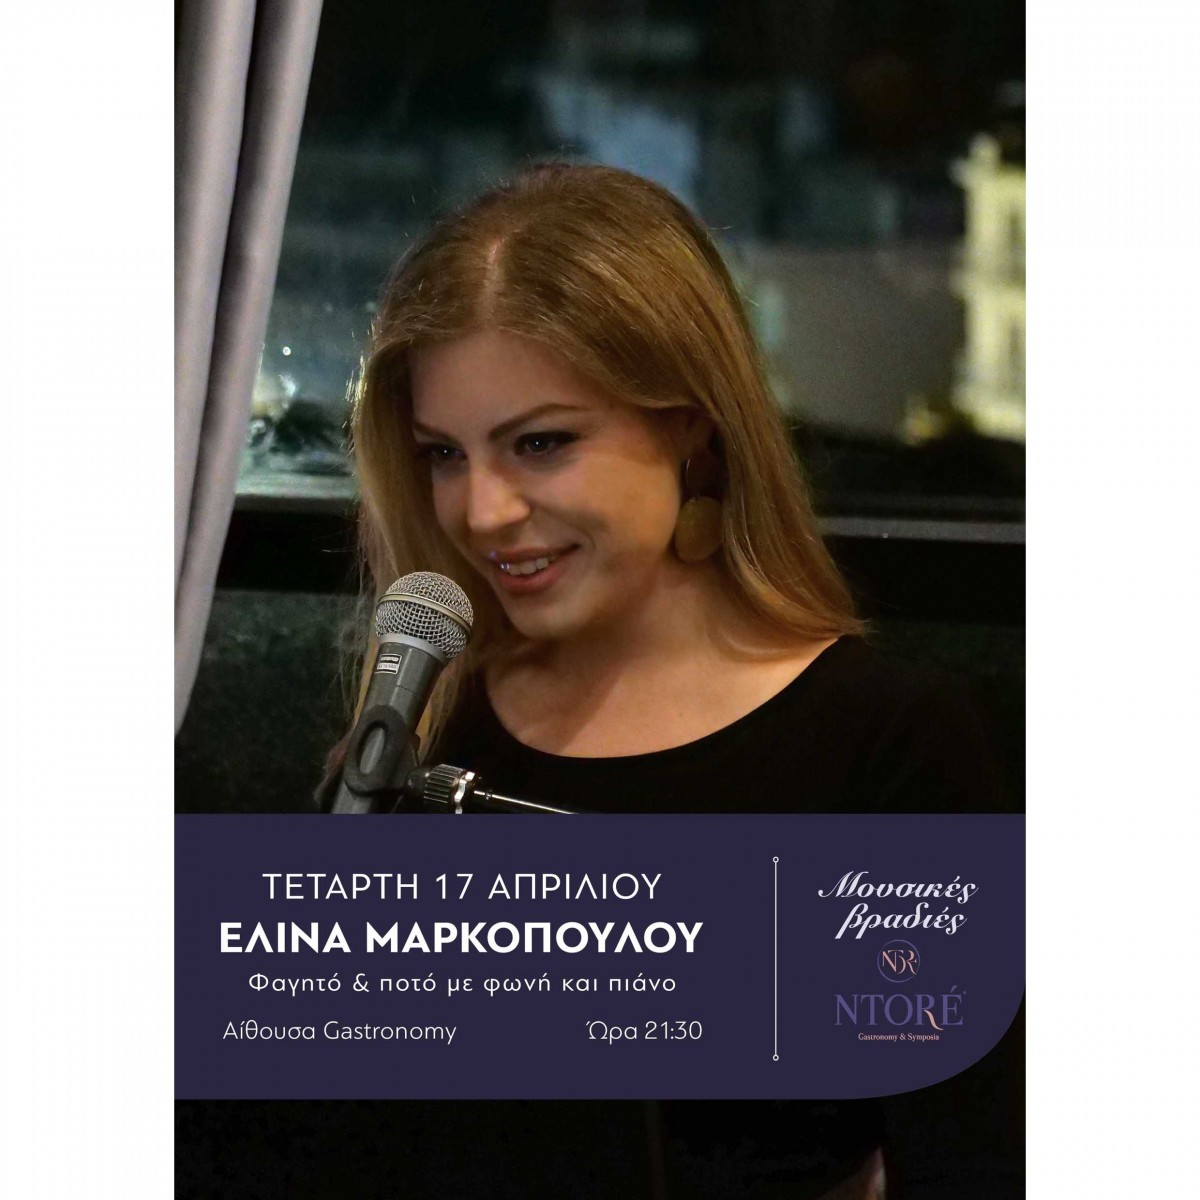 Φαγητό και ποτό με την Ελίνα Μαρκοπούλου στη φωνή και το πιάνο και την καλύτερη θέα της πόλης! Τετάρτη 17 Απριλίου, 21:30